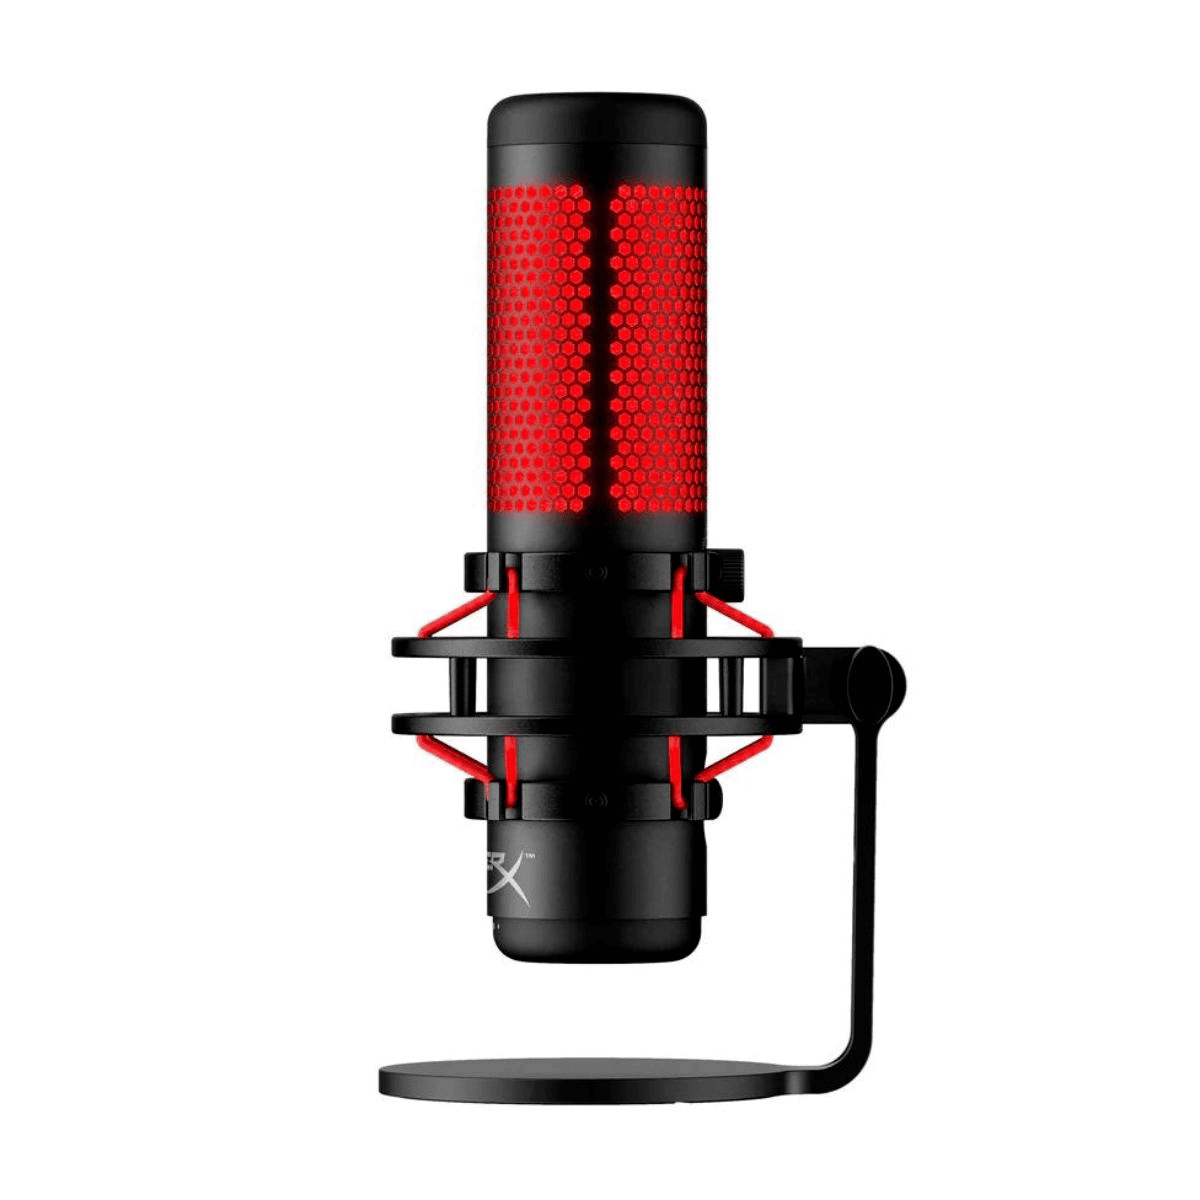 HyperX Microfono 4P5P6AA Nero